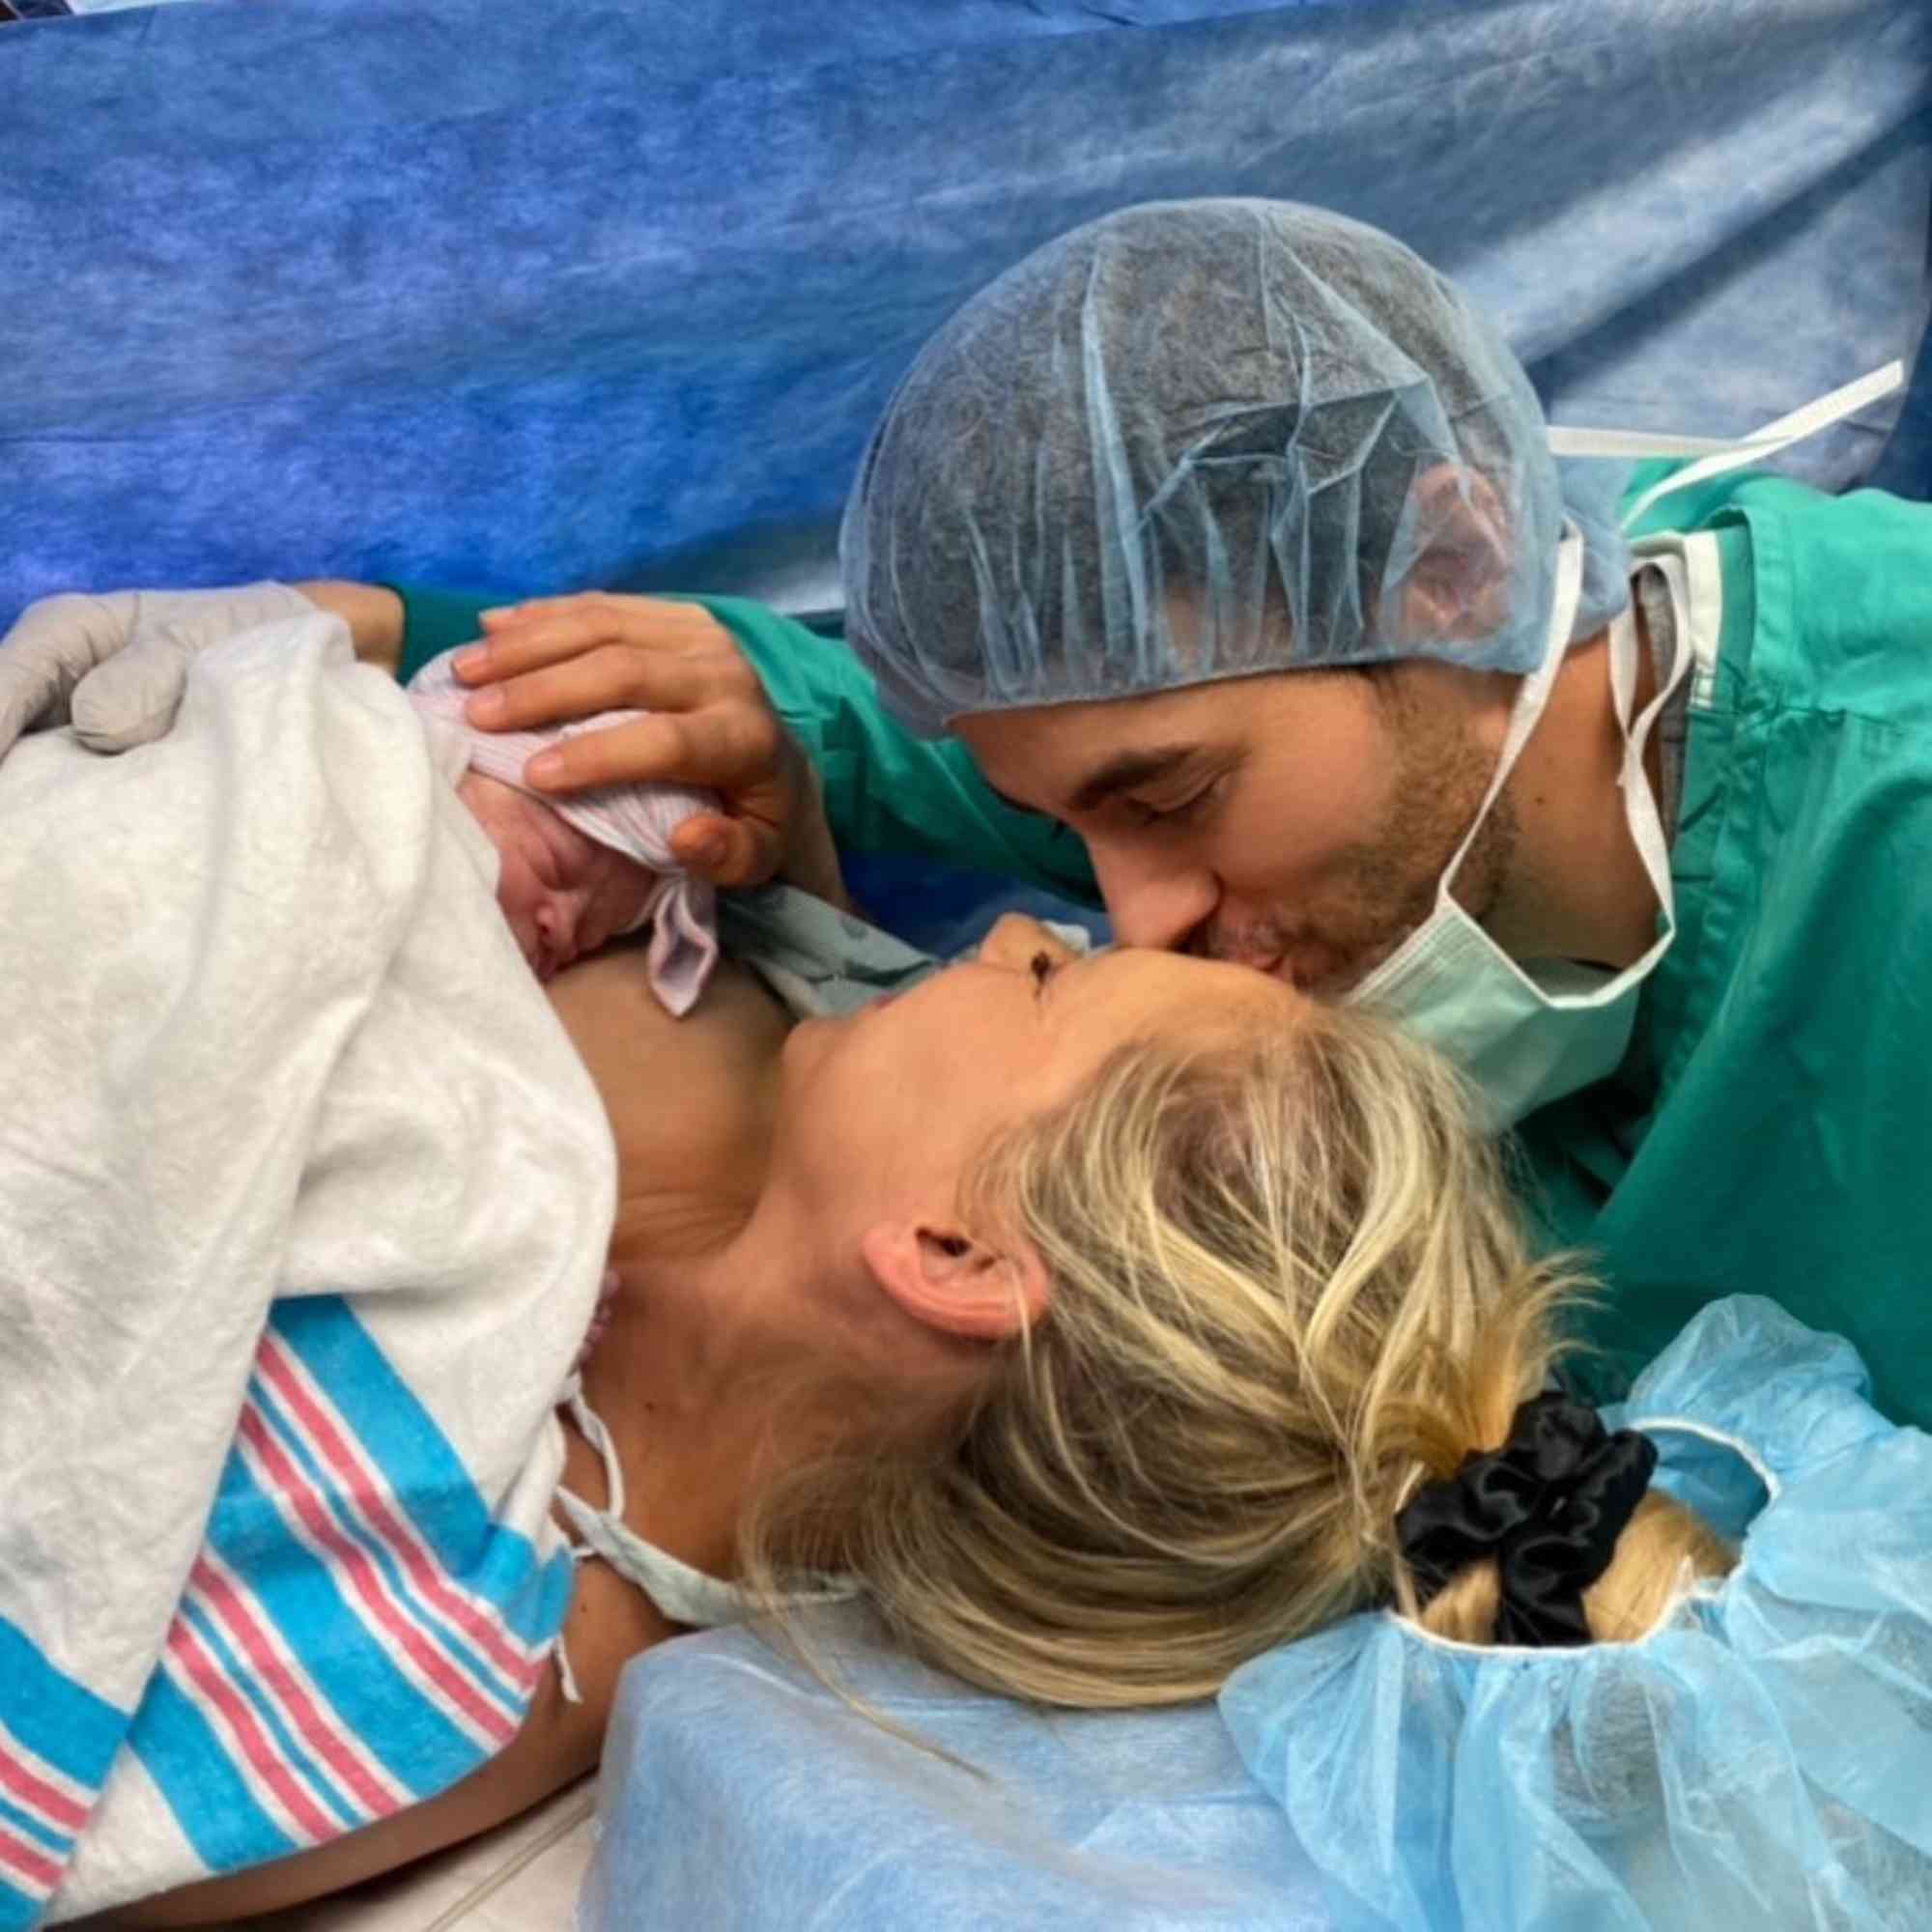 Enrique Iglesias and Anna Kournikova welcome baby